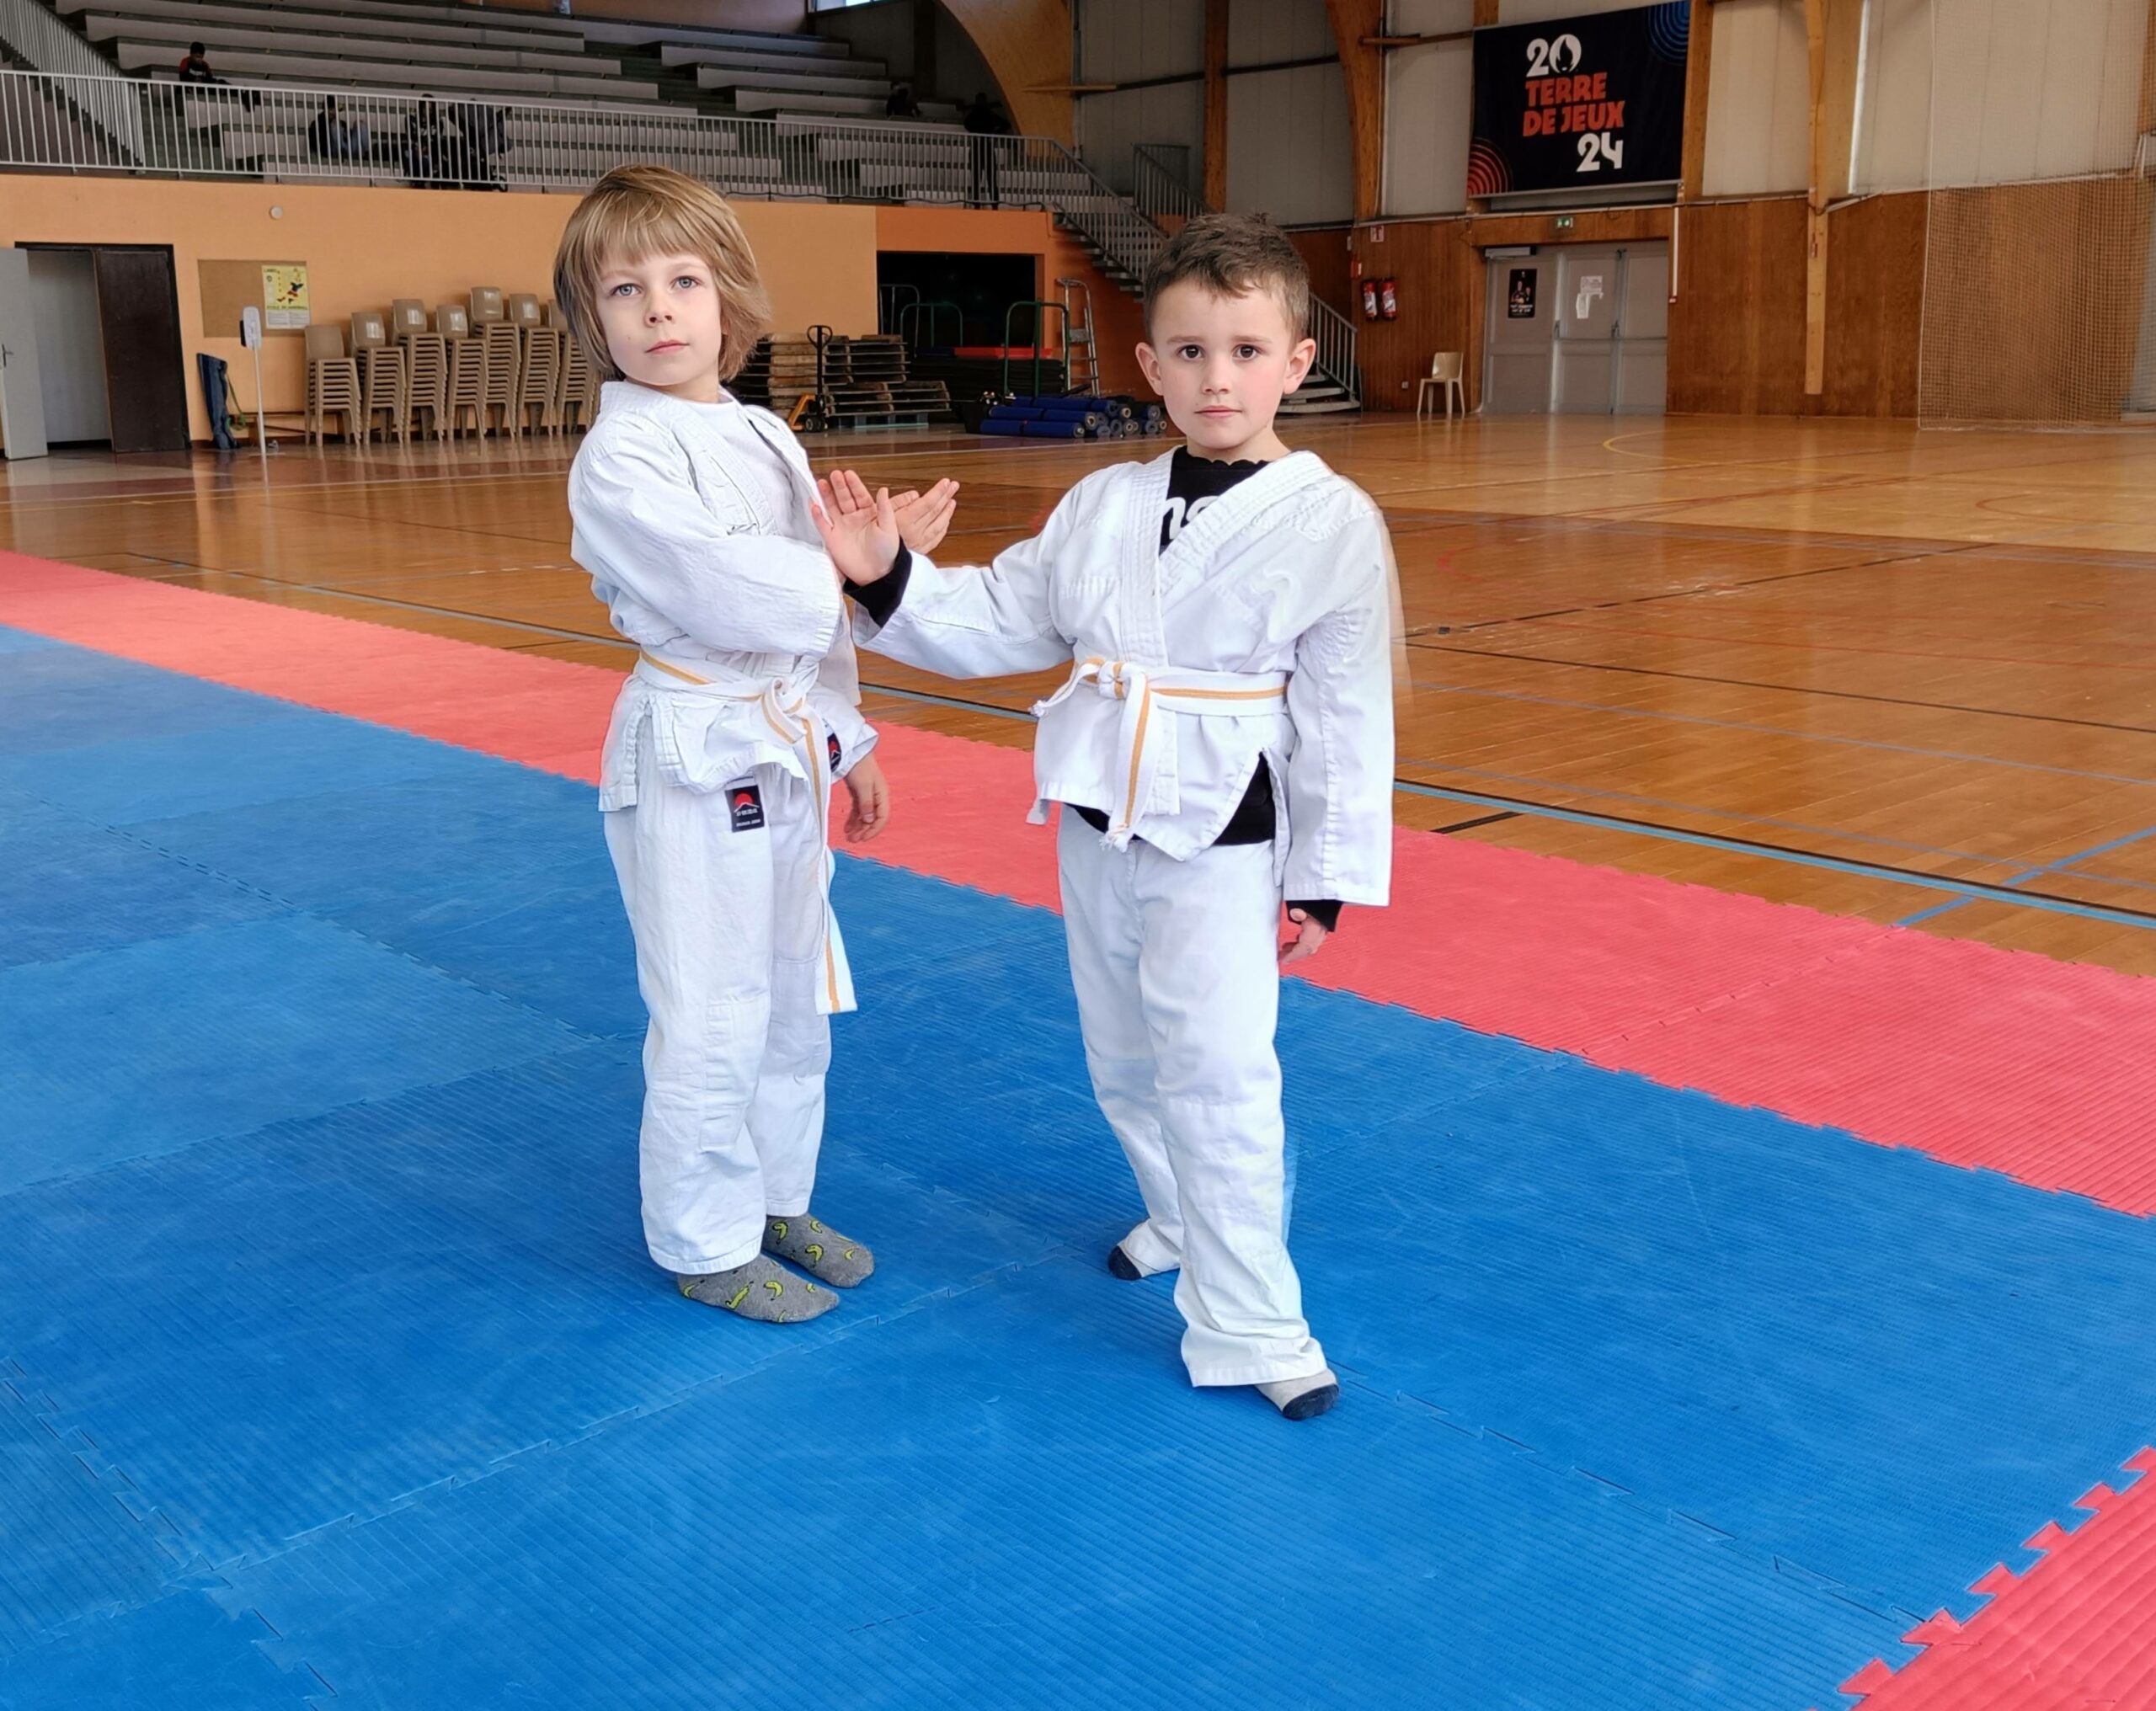 Les enfants peuvent pratiquer l'aïkido